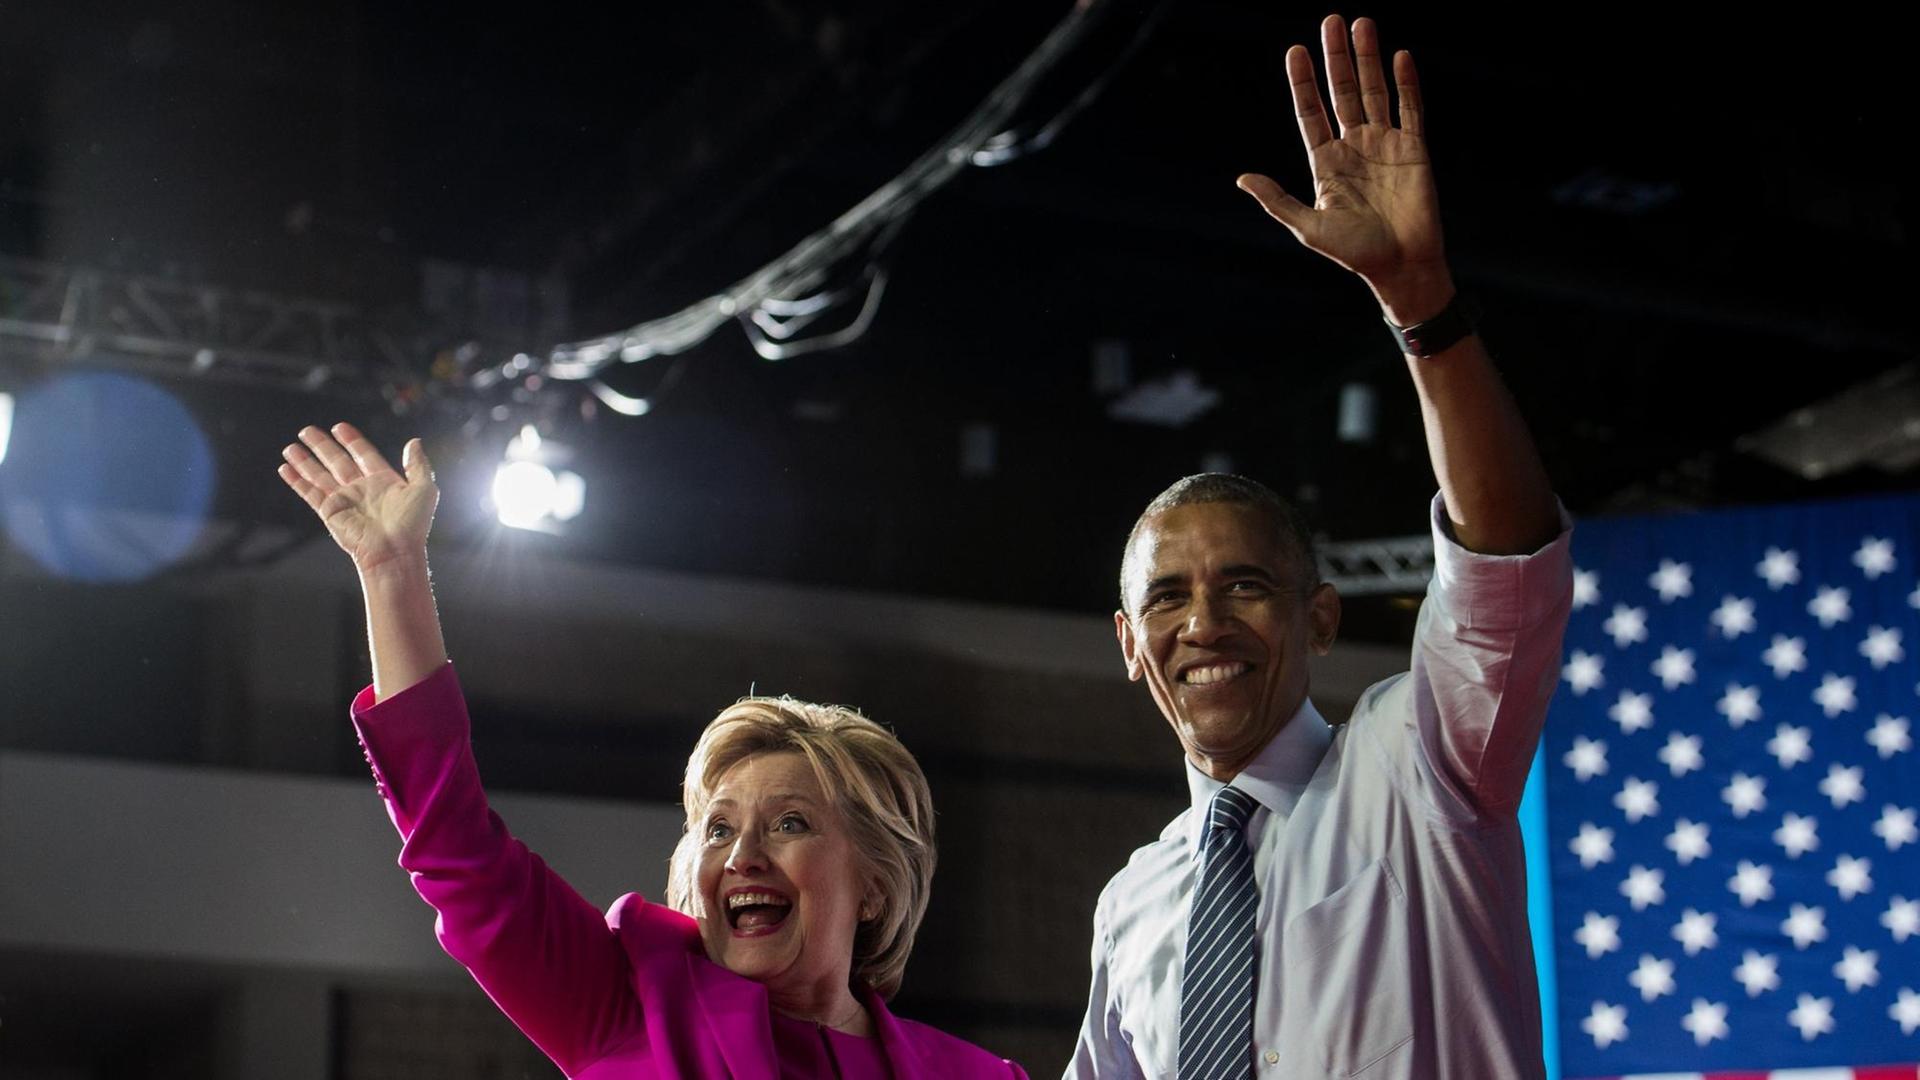 US-Präsident Barack Obama und die demokratische Präsidentschaftskandidatin Hillary Clinton bei einer Wahlkampfveranstaltung in Charlotte, North Carolina.